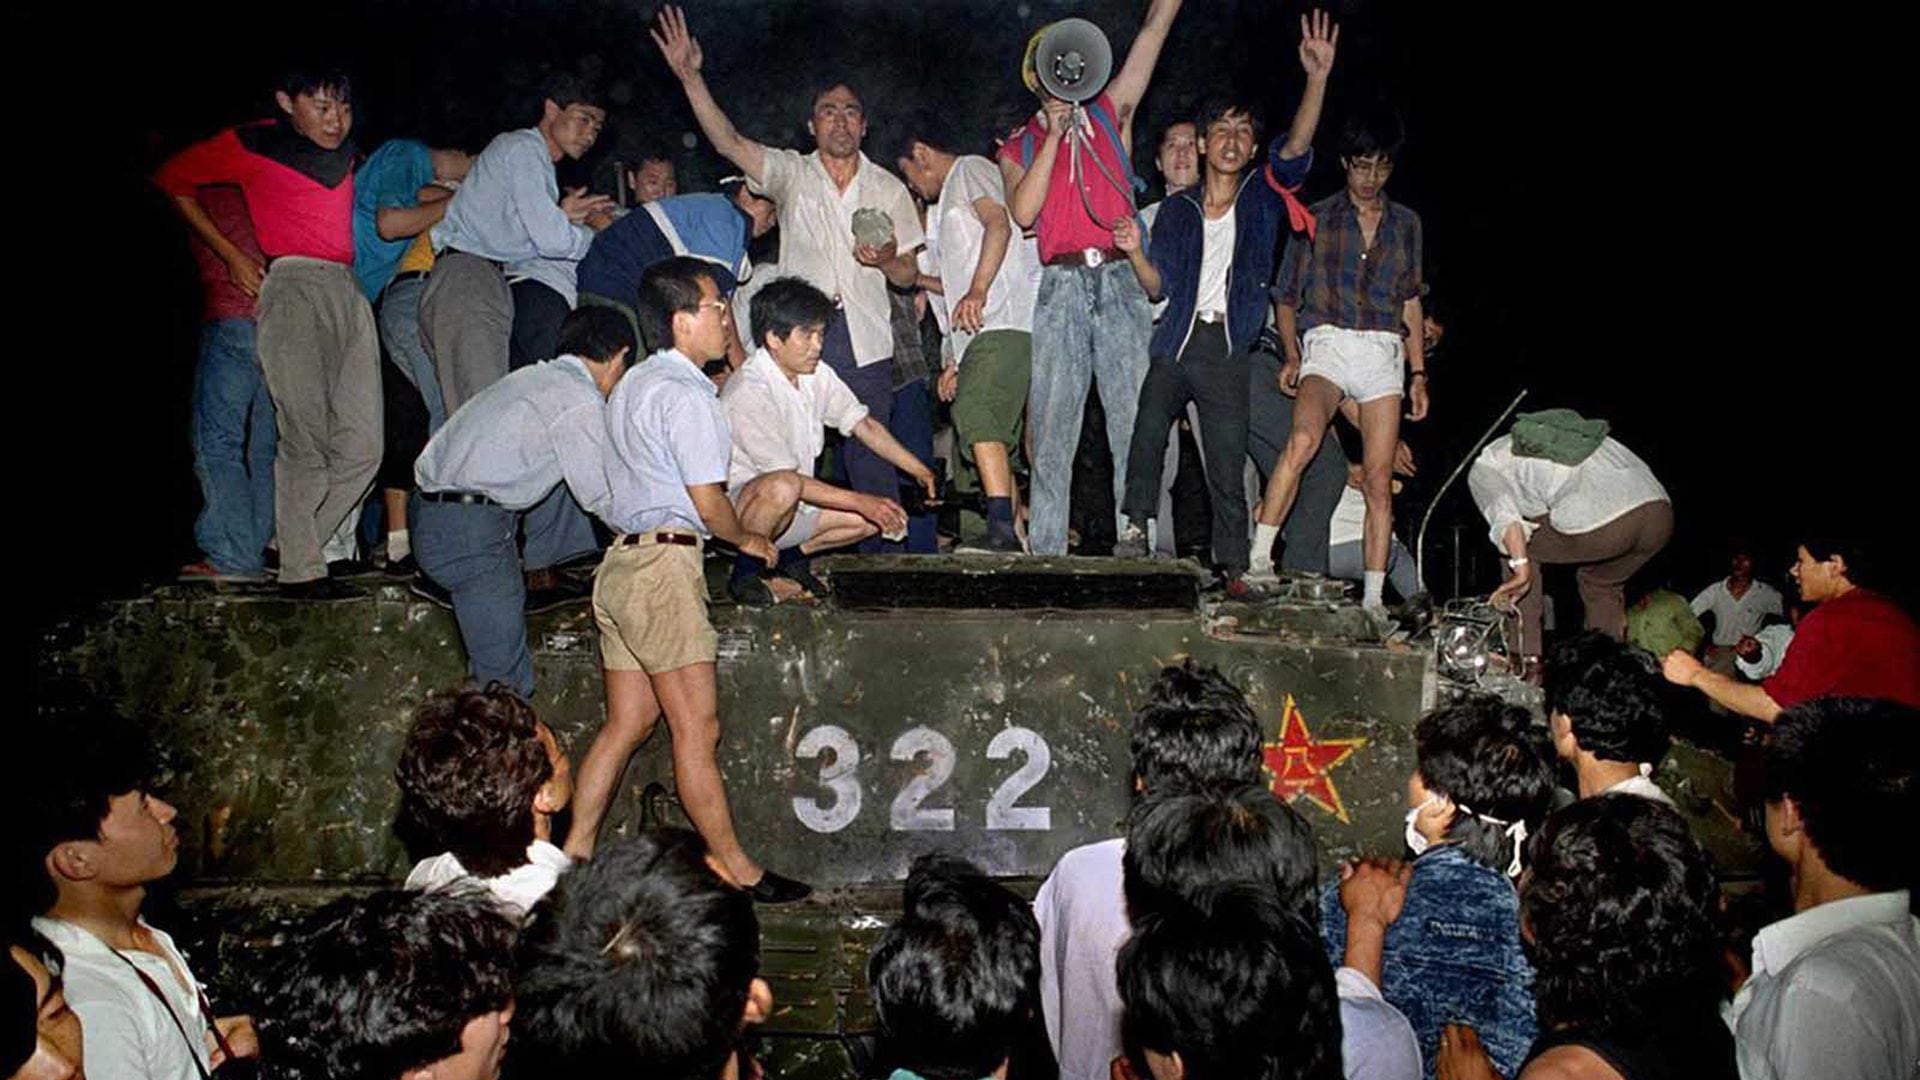 Personas protestan contra el régimen chino en la plaza Tiananmen en China en 1989